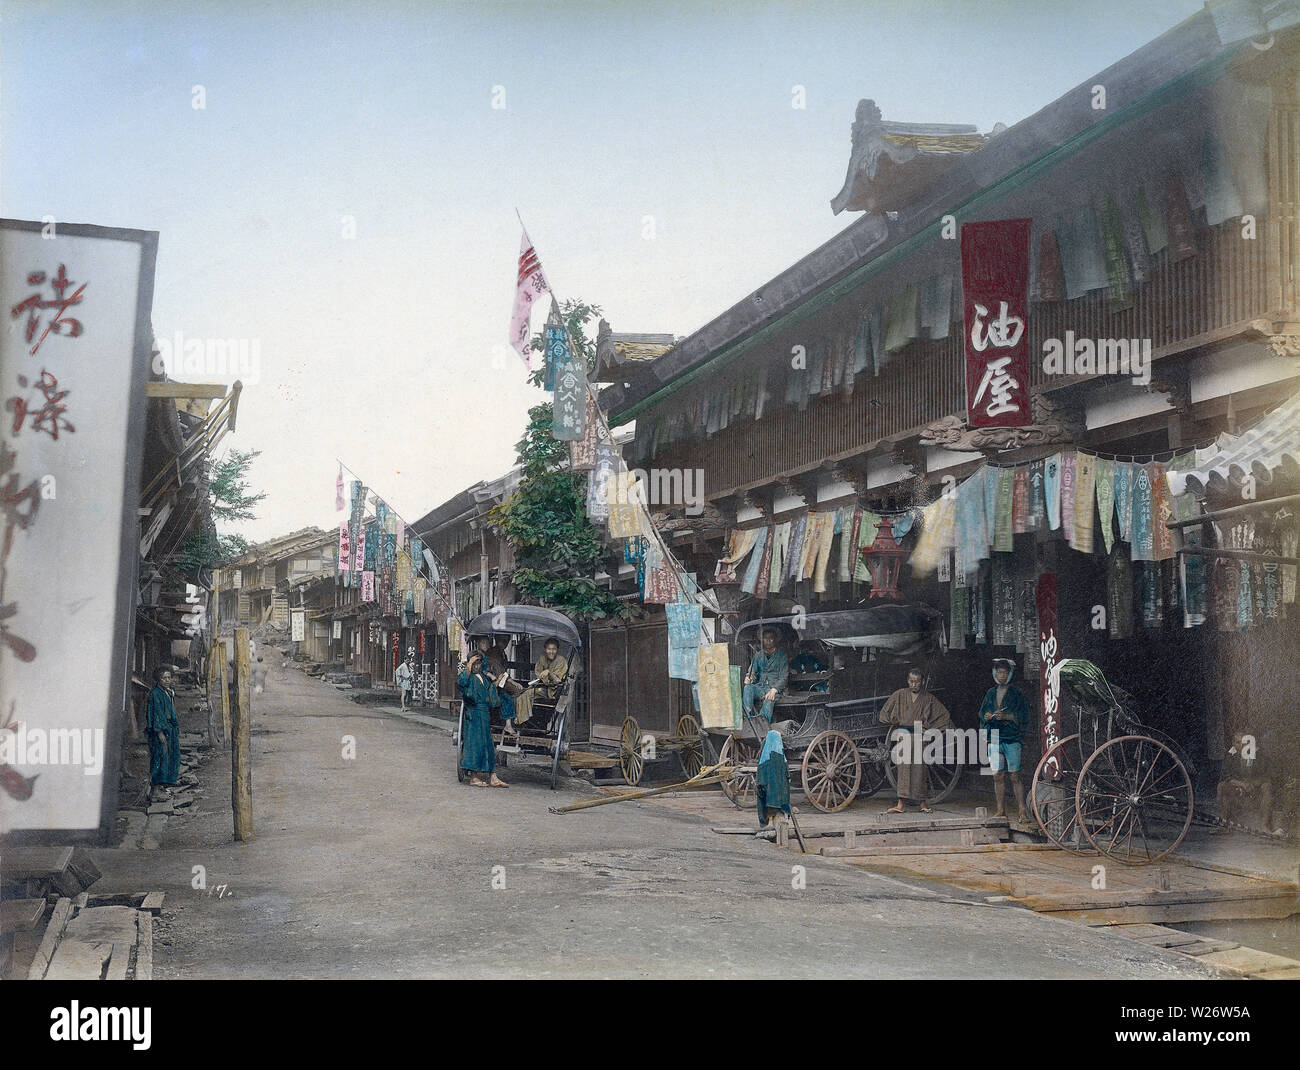 [ 1880 Japón - Post ciudad Posadas en la Nakasendo ] - Post ciudad Posadas en Oiwake Juku (追分宿) en la Prefectura de Nagano alrededor de 1880 (Meiji 13). La ciudad fue la número 20 de las sesenta y nueve estaciones shukueki (forma) de la Nakasendo, una de las dos rutas que conectan Edo (actual Tokio) a Kioto. Vintage del siglo xix albúmina fotografía. Foto de stock